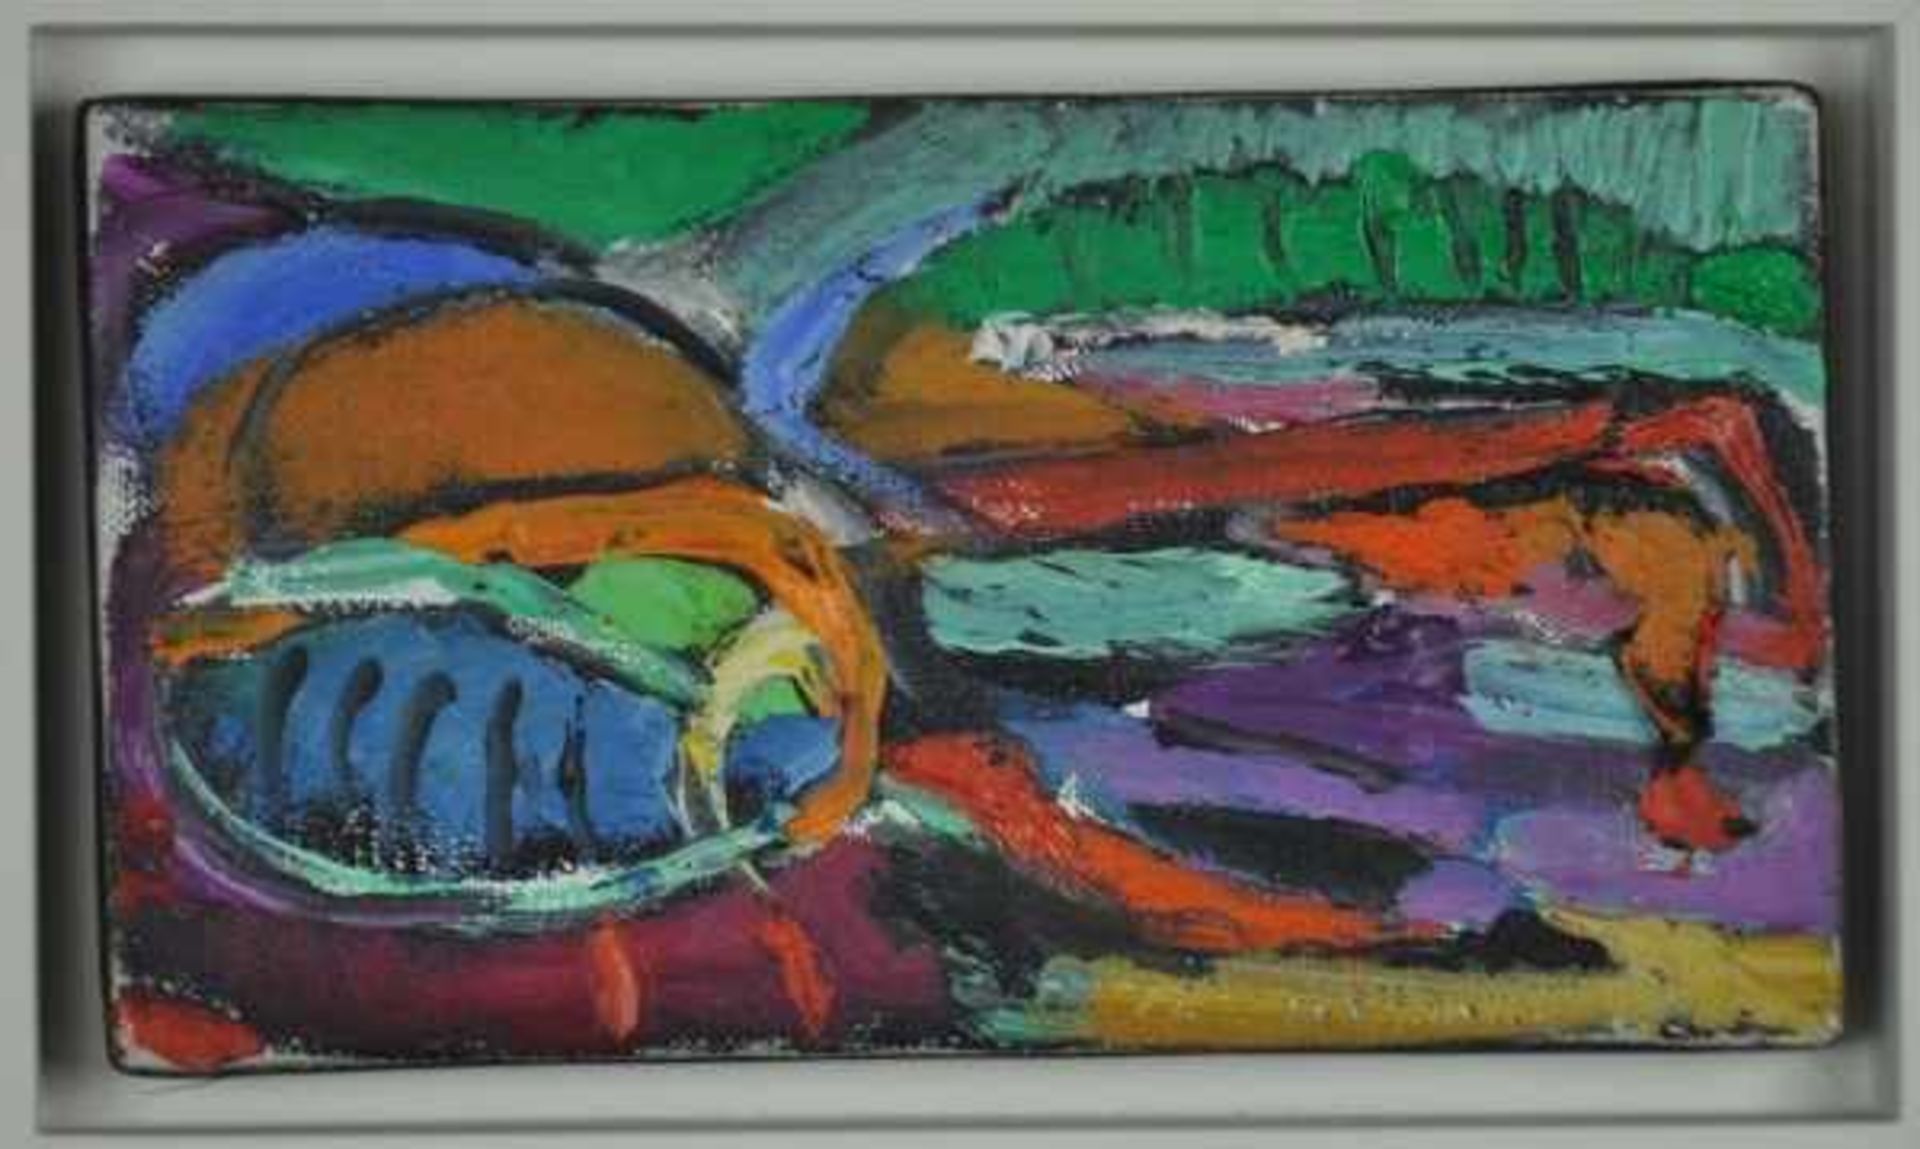 LANSKOY André (1902 Moskau - 1976 Paris) "Abstrakte Komposition", in kräftigen Farben mit pastosem